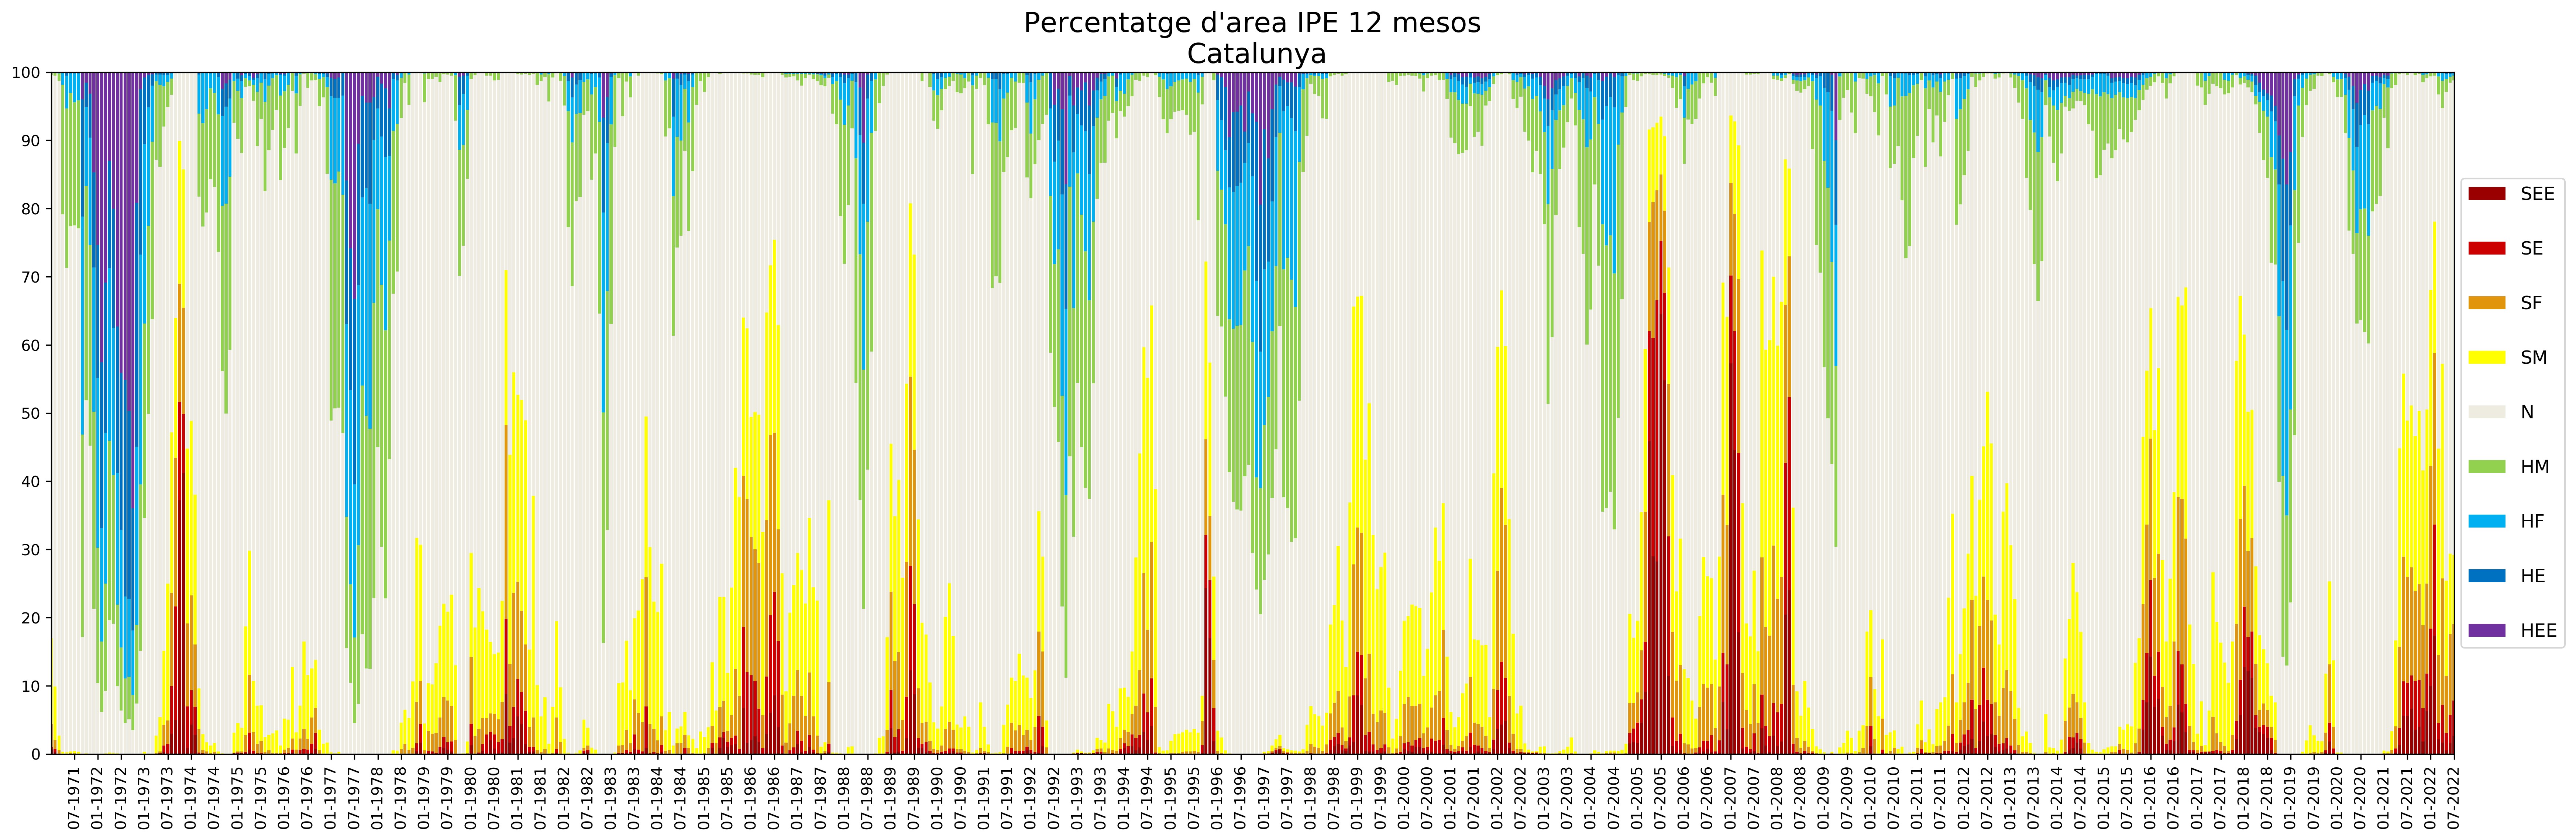 Figura 6. Evolució temporal desembre 1970 – juliol 2022 del % de superfície a Catalunya afectada per règims hídrics de sequera moderada, forta, extrema i excepcional (SM, SF, SE i SEE) segons l’IPE-12 